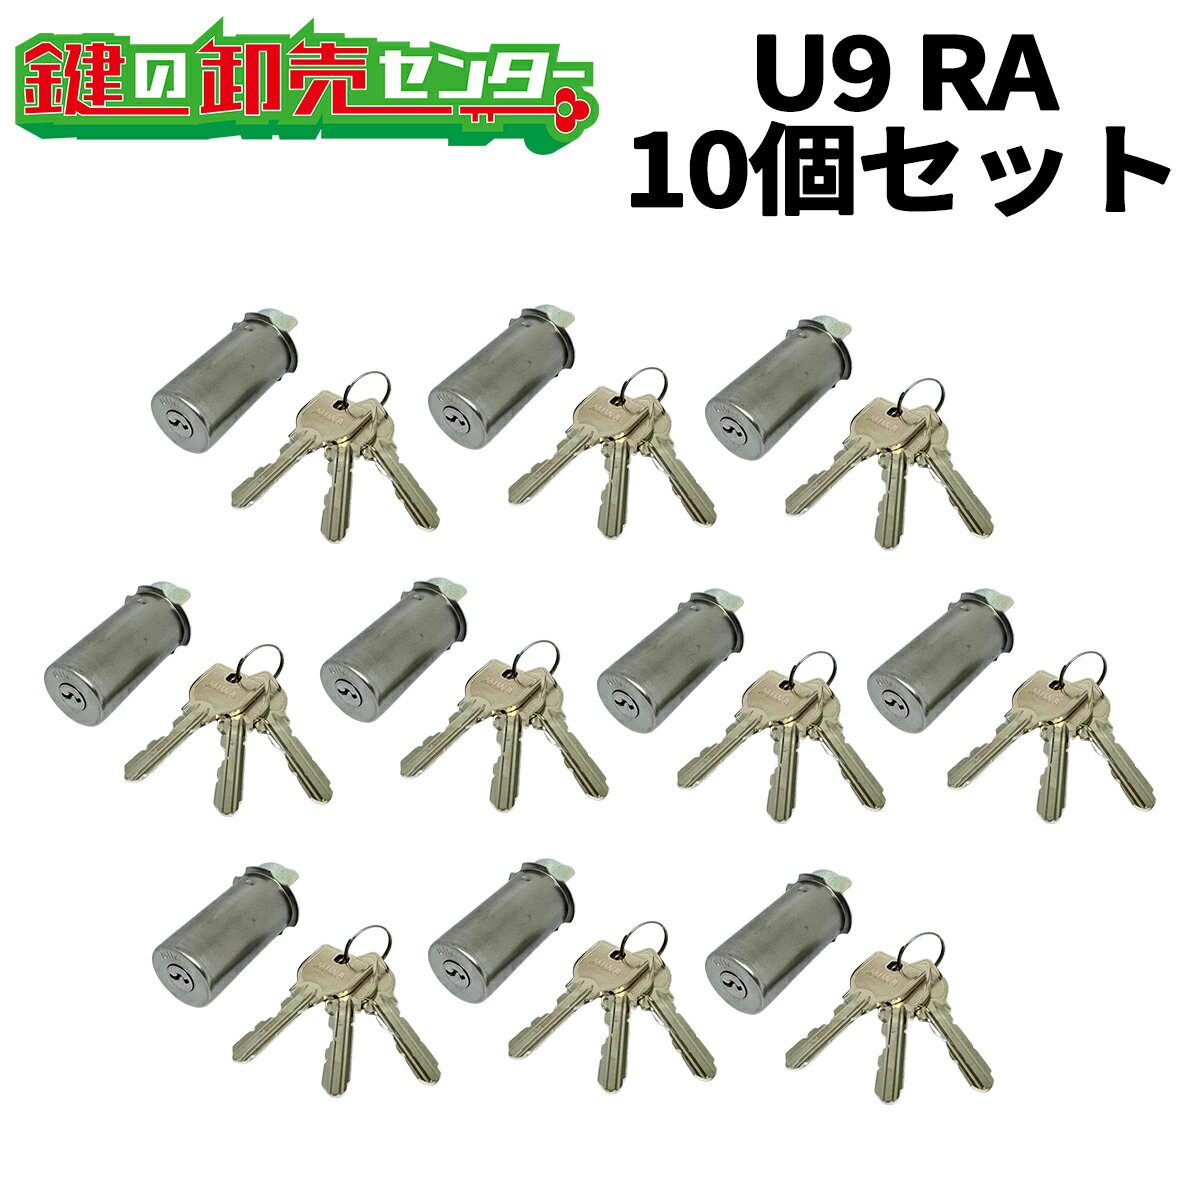 【10個セット】U9 RA.CY MIWA U9RA(85RA,82RA,04RV)用取替シリンダー ・付属キー：純正キー3本 ・ST (シルバー) 鍵(カギ) 交換 取替 1